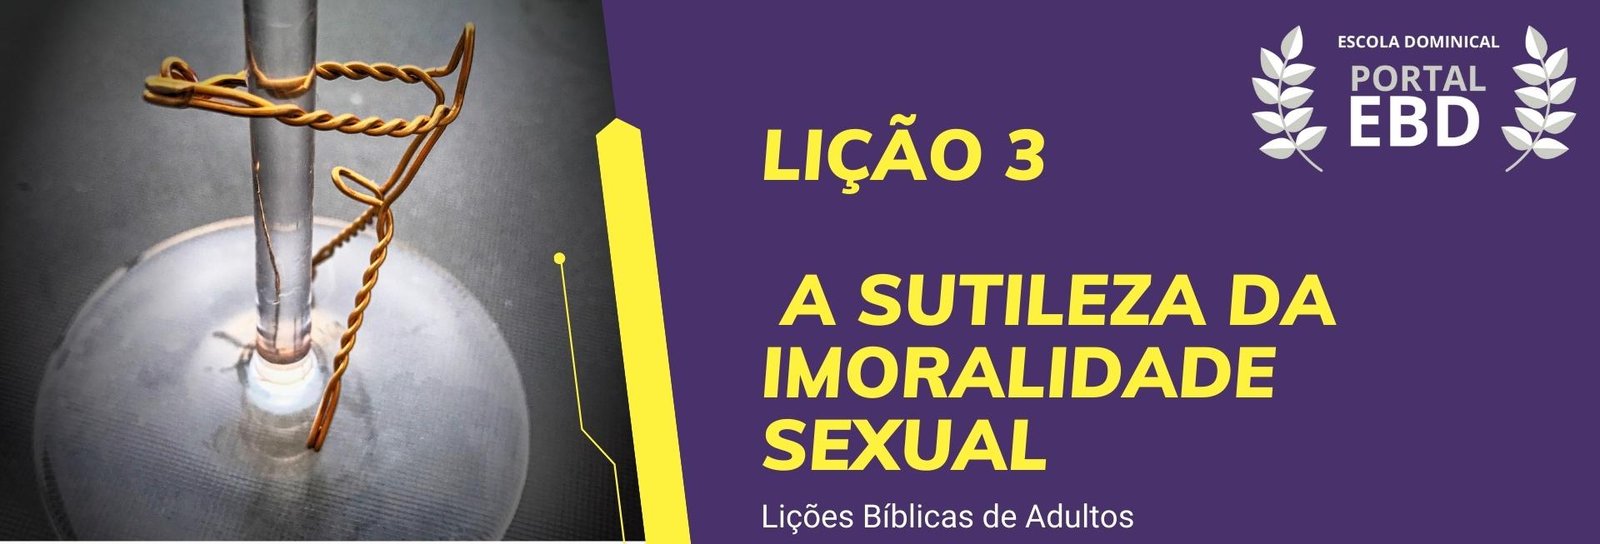 Lição 3 - A sutileza da imoralidade sexual V